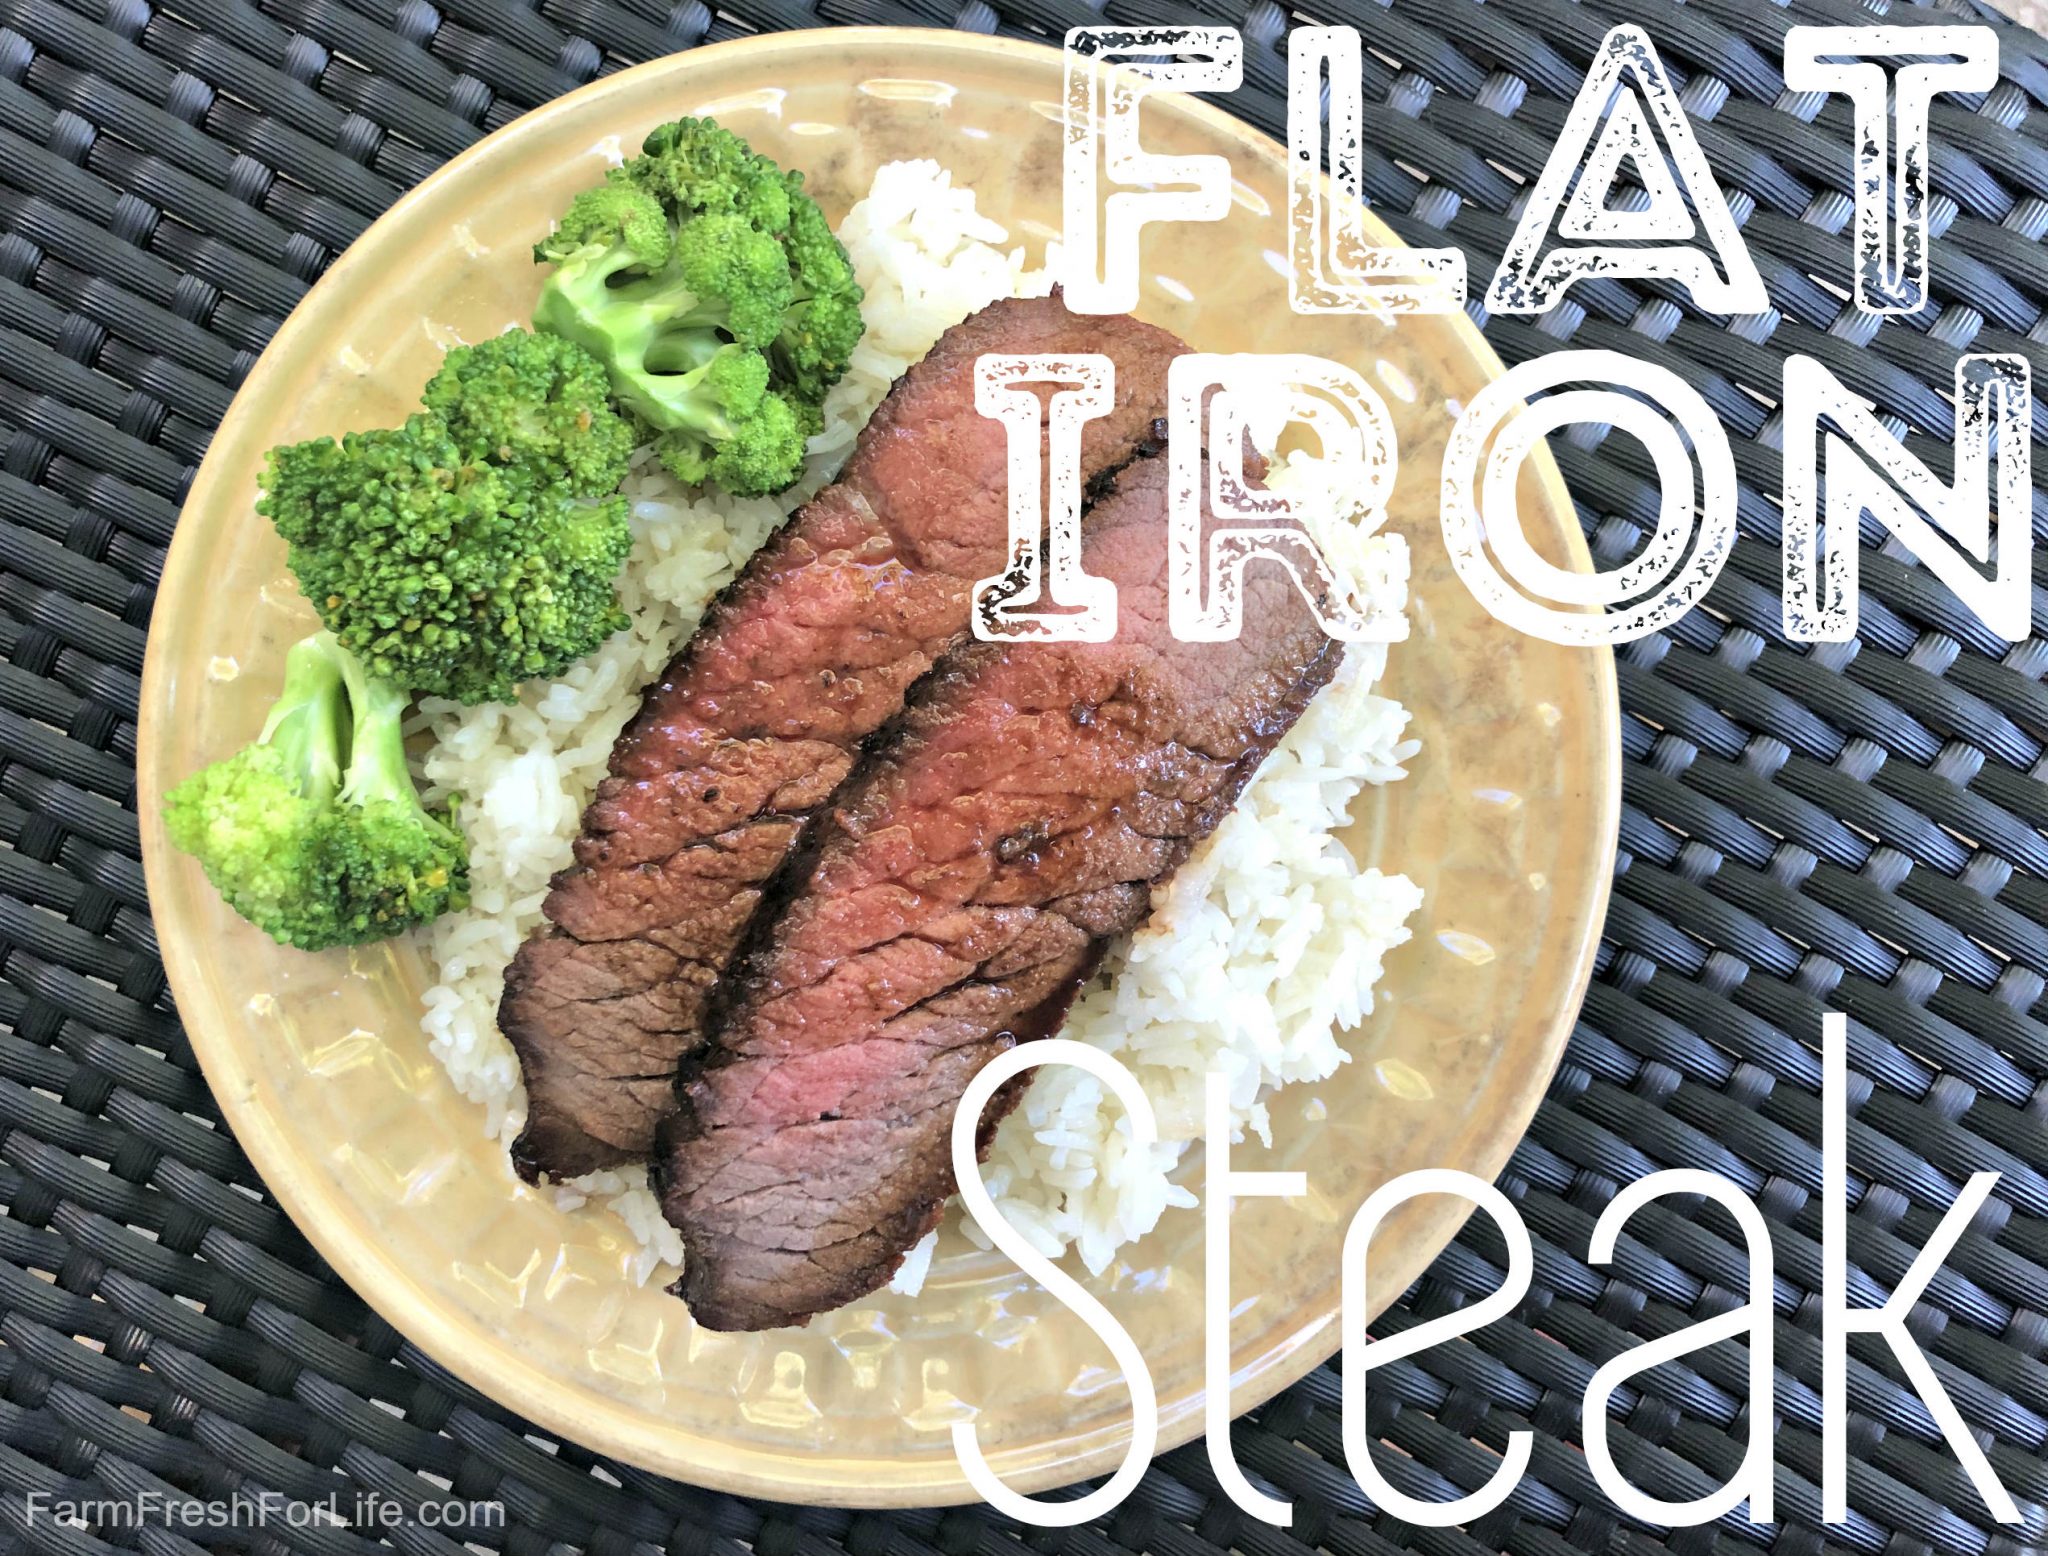 https://farmfreshforlife.com/wp-content/uploads/2020/07/flat-iron-steak4-scaled.jpg